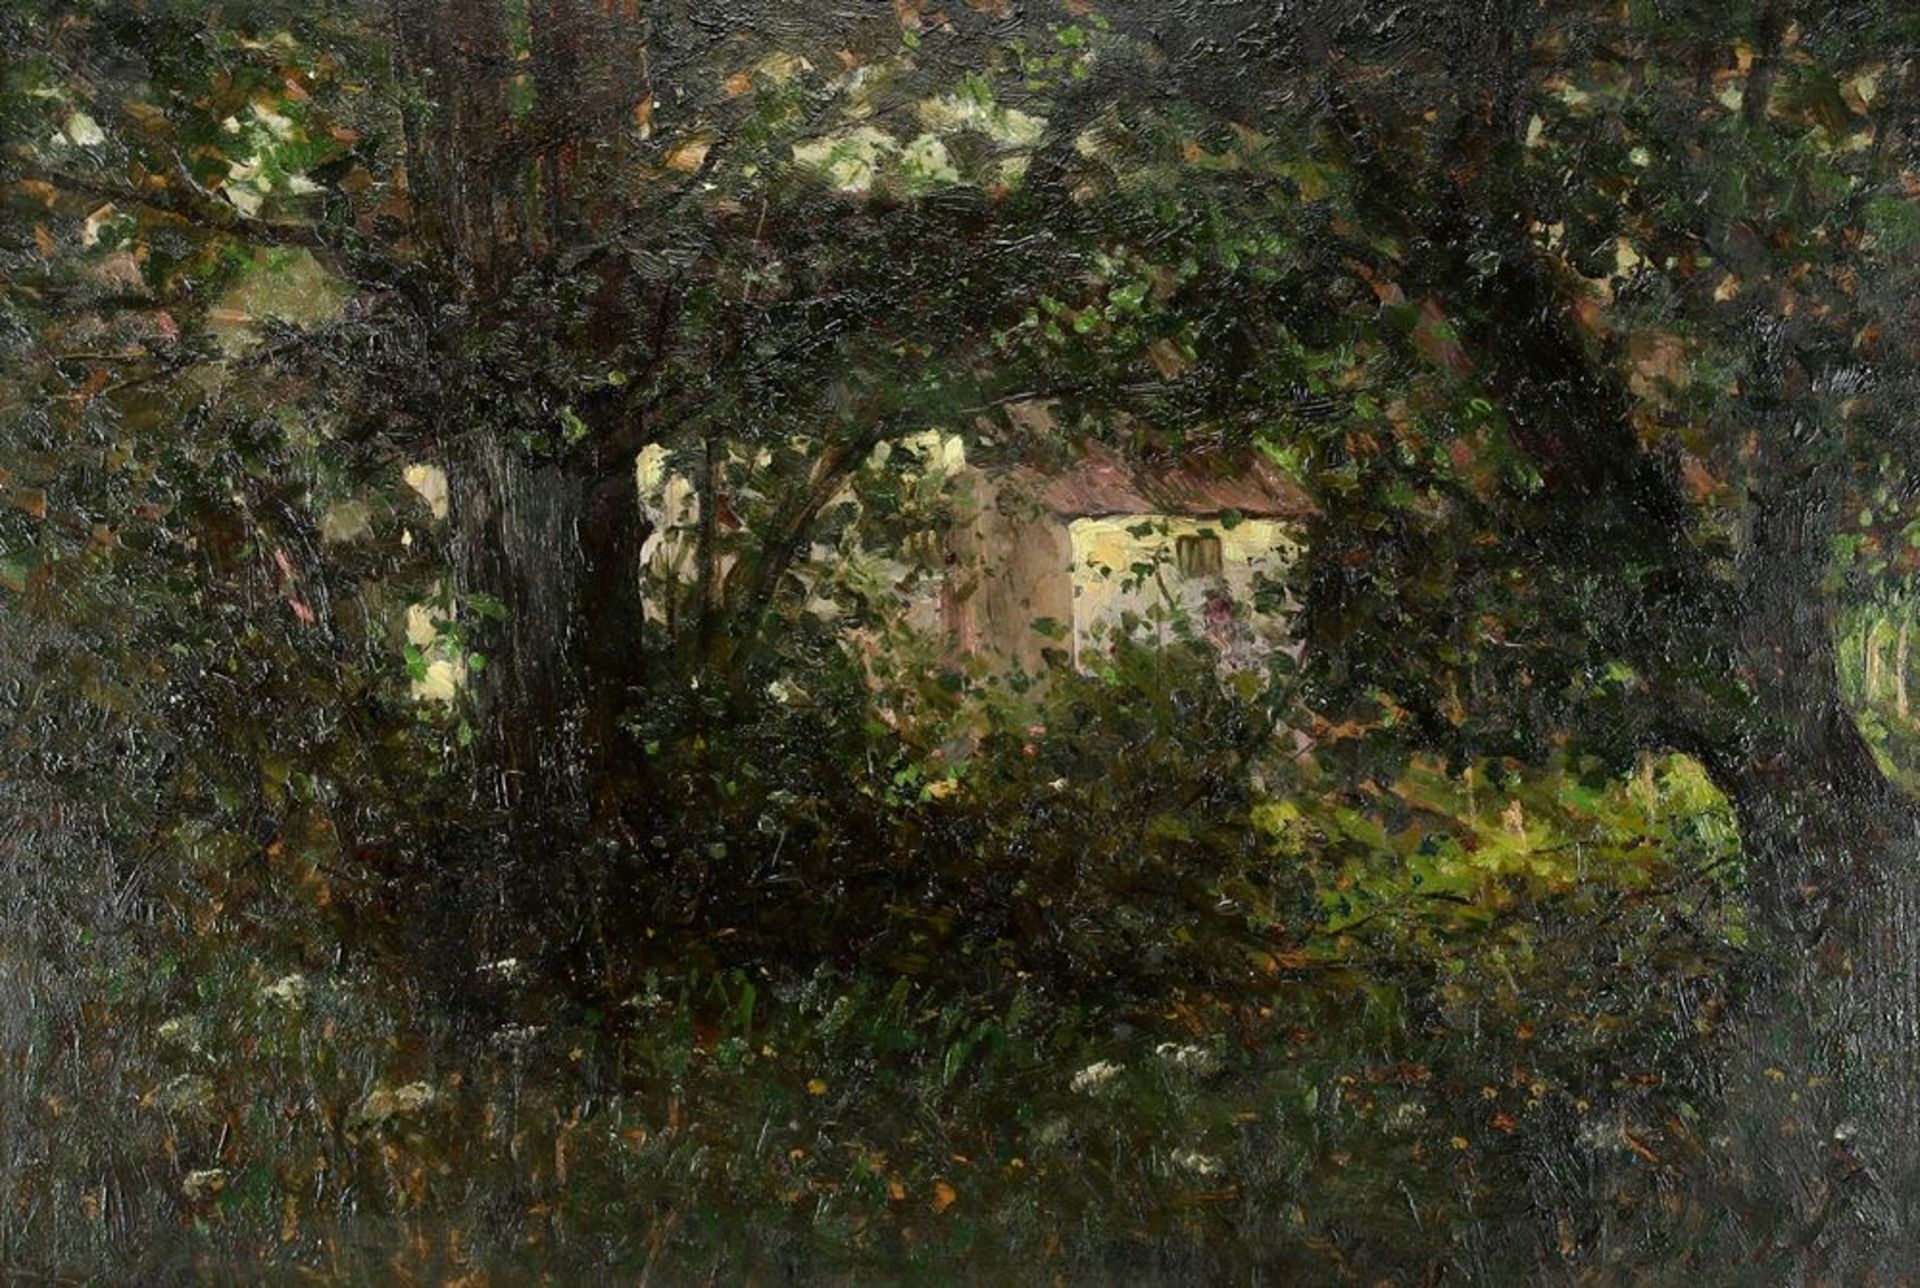 Stoskopf, Gustav Jacques1869 Brumath - 1944 Strassburg. Ausblick aus dem dichten Wald auf ein helles